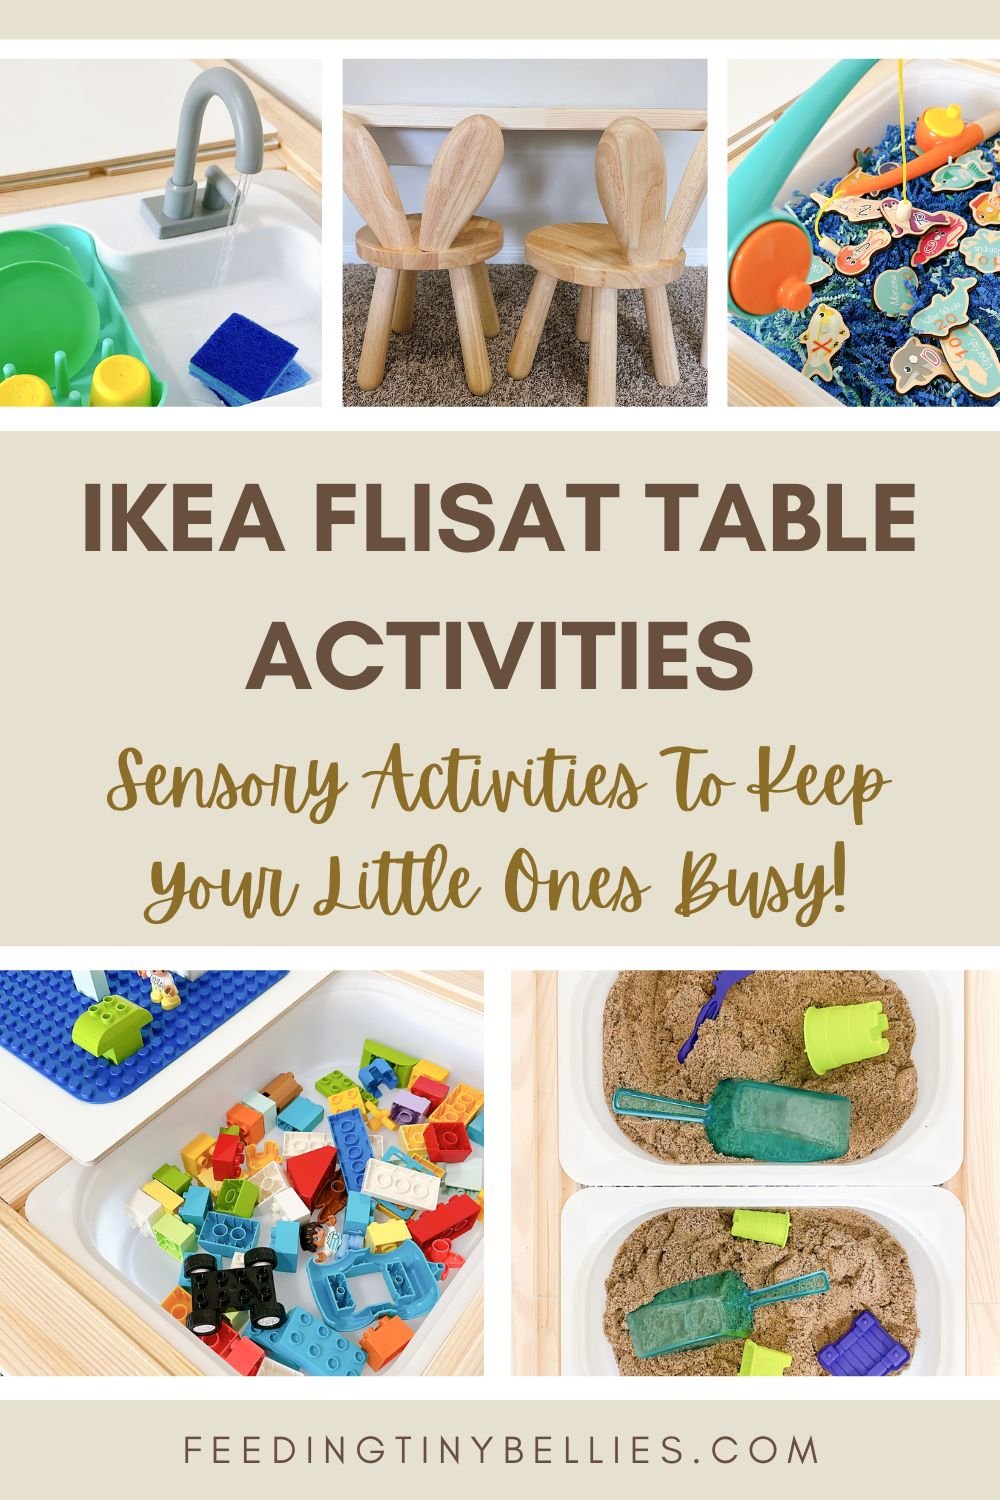 Ikea Flisat Table activities.